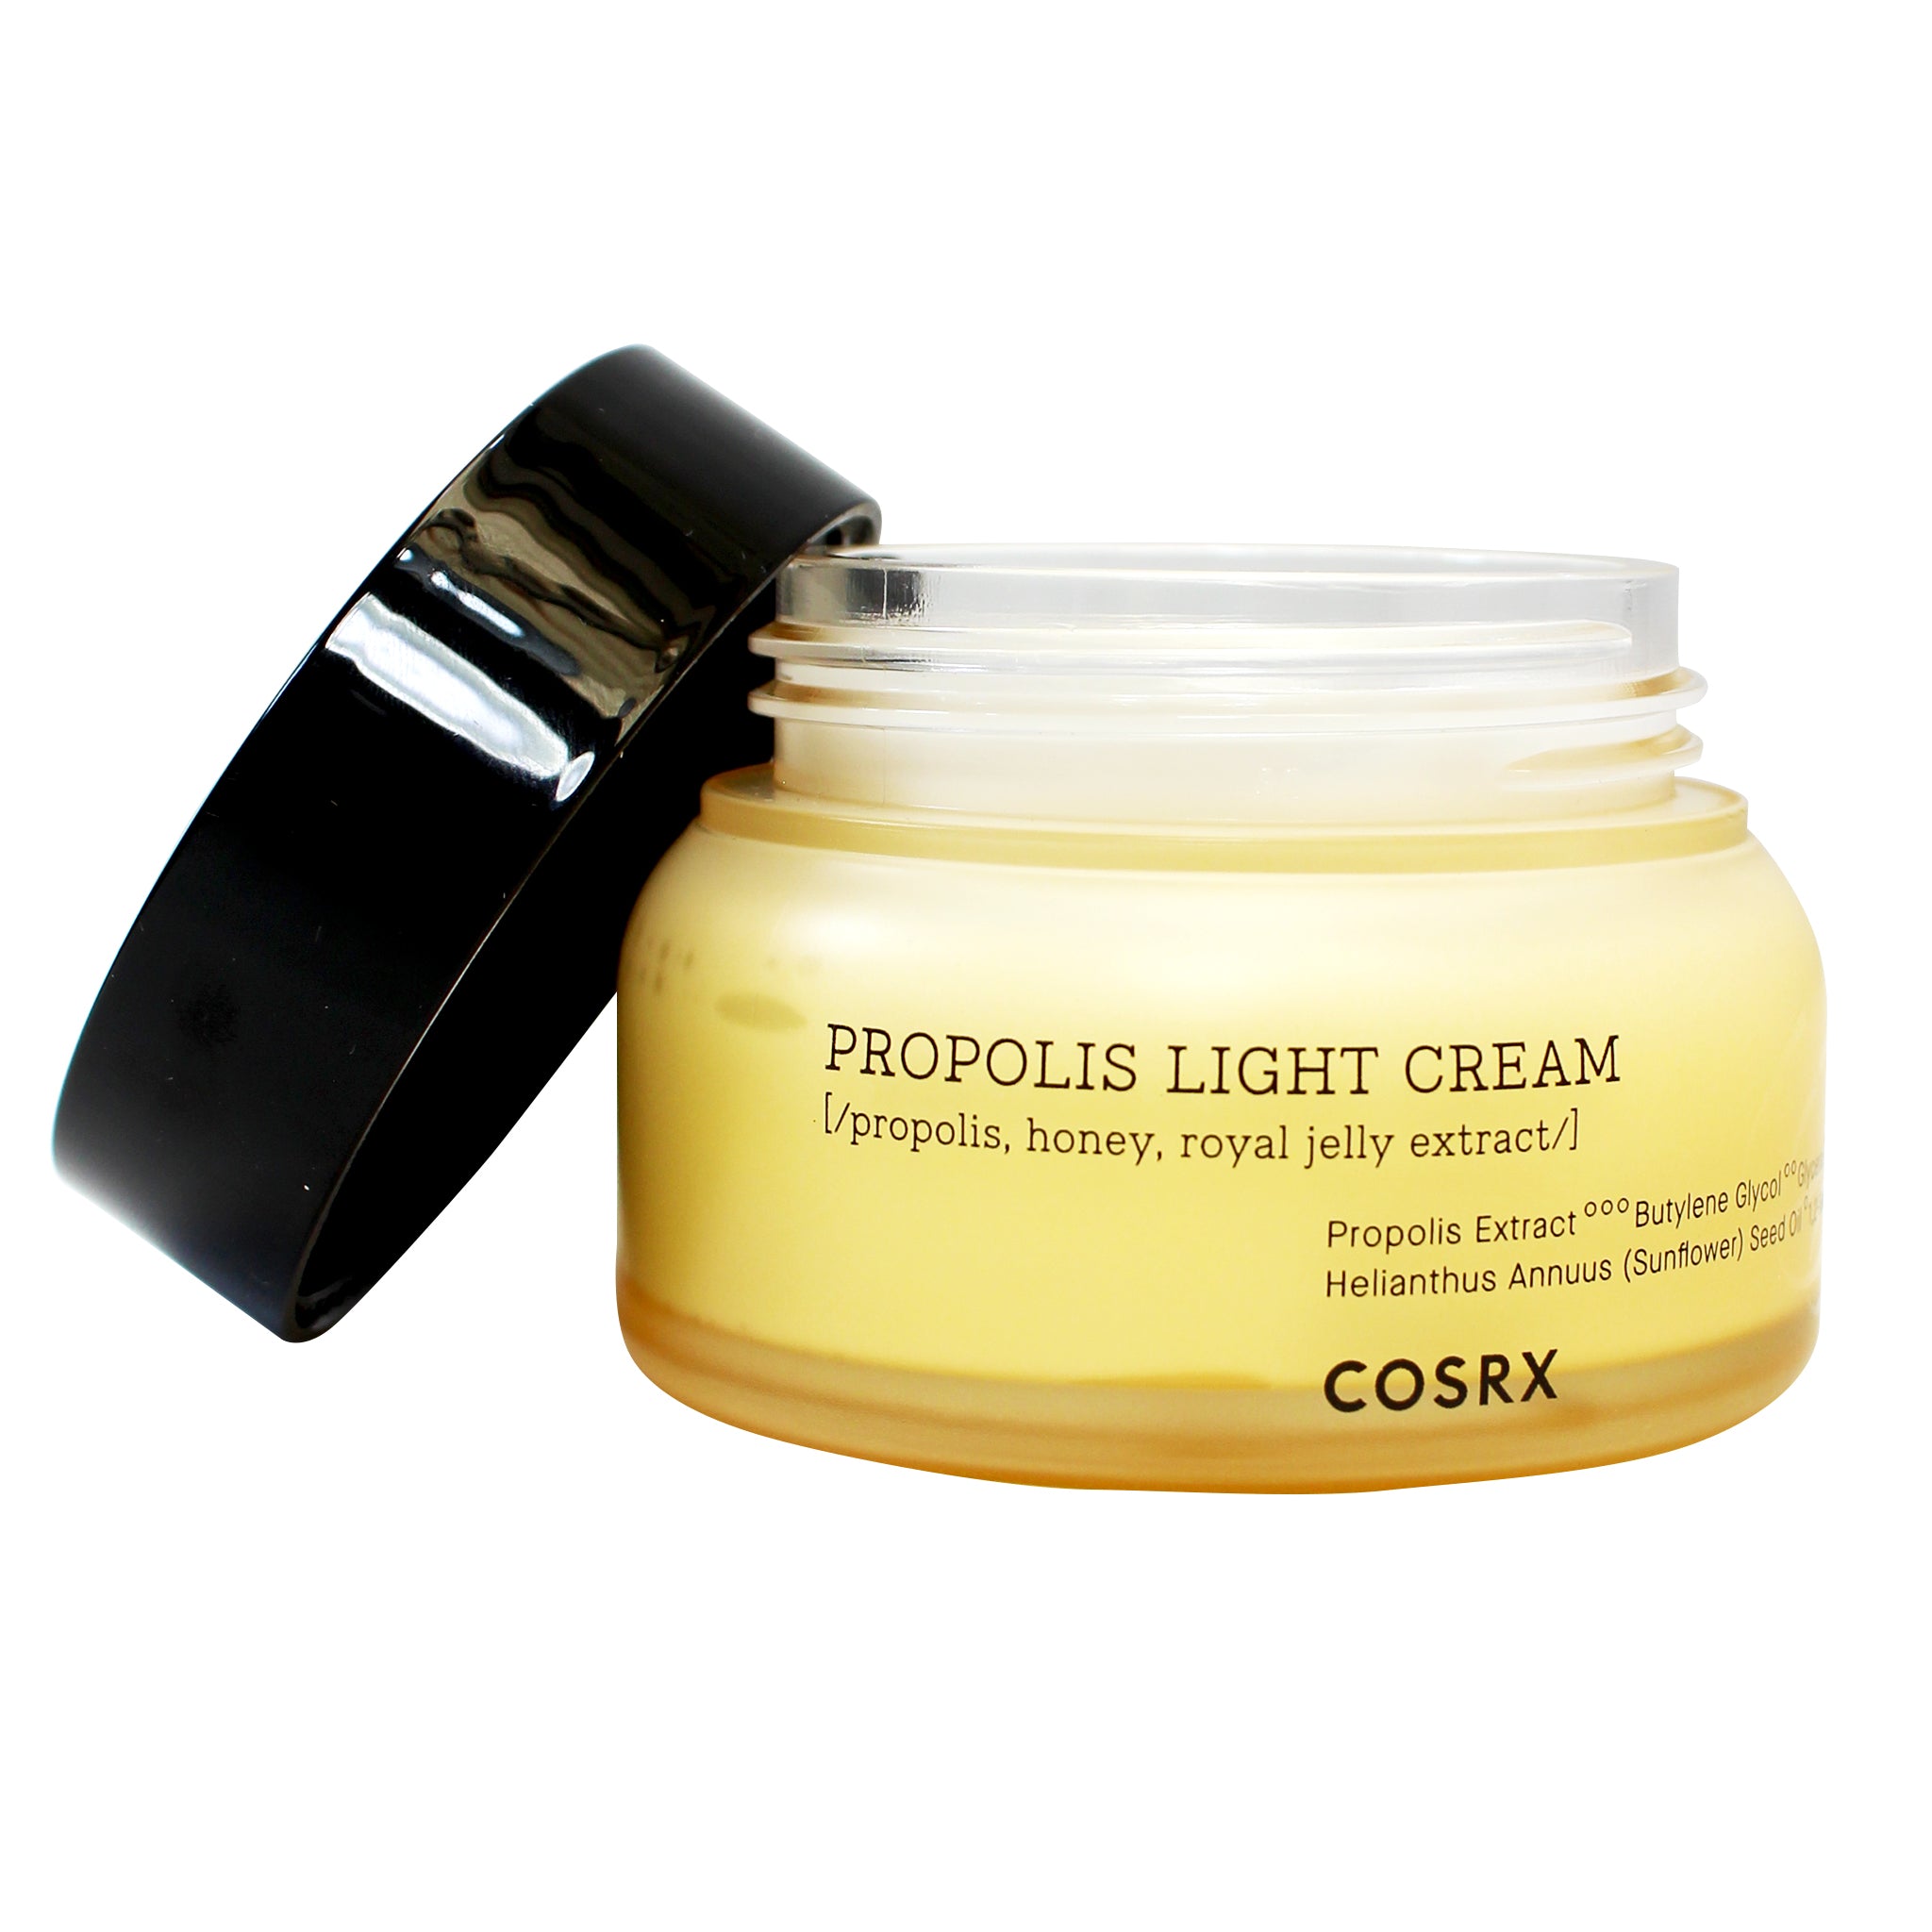 COSRX-Full Fit Propolis Light Cream